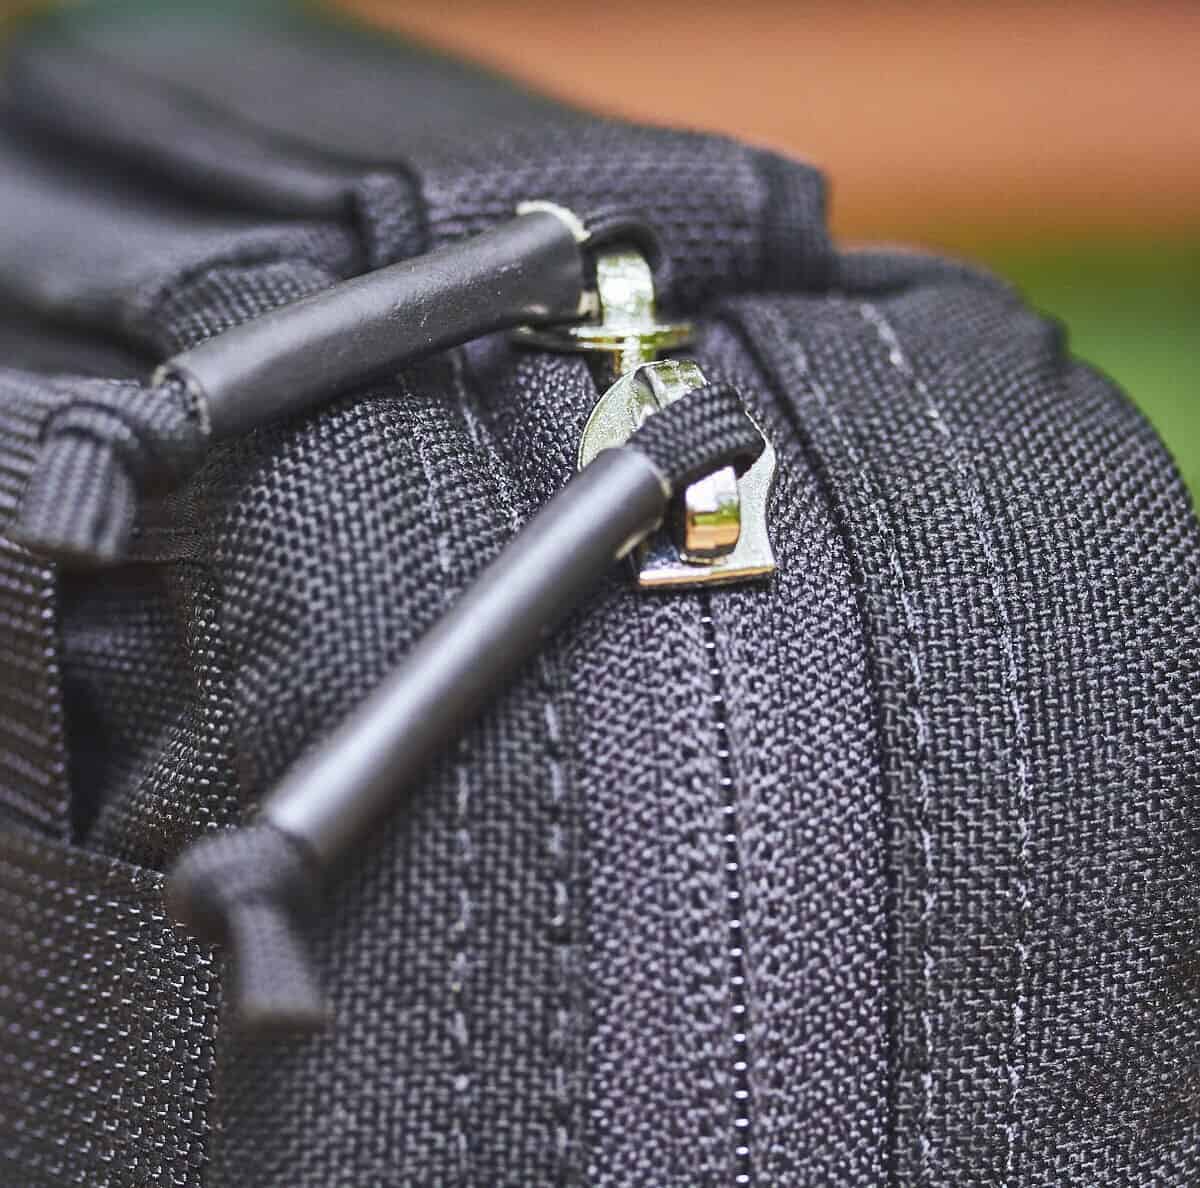 GORUCK GR1 Field Pocket - USA zipper